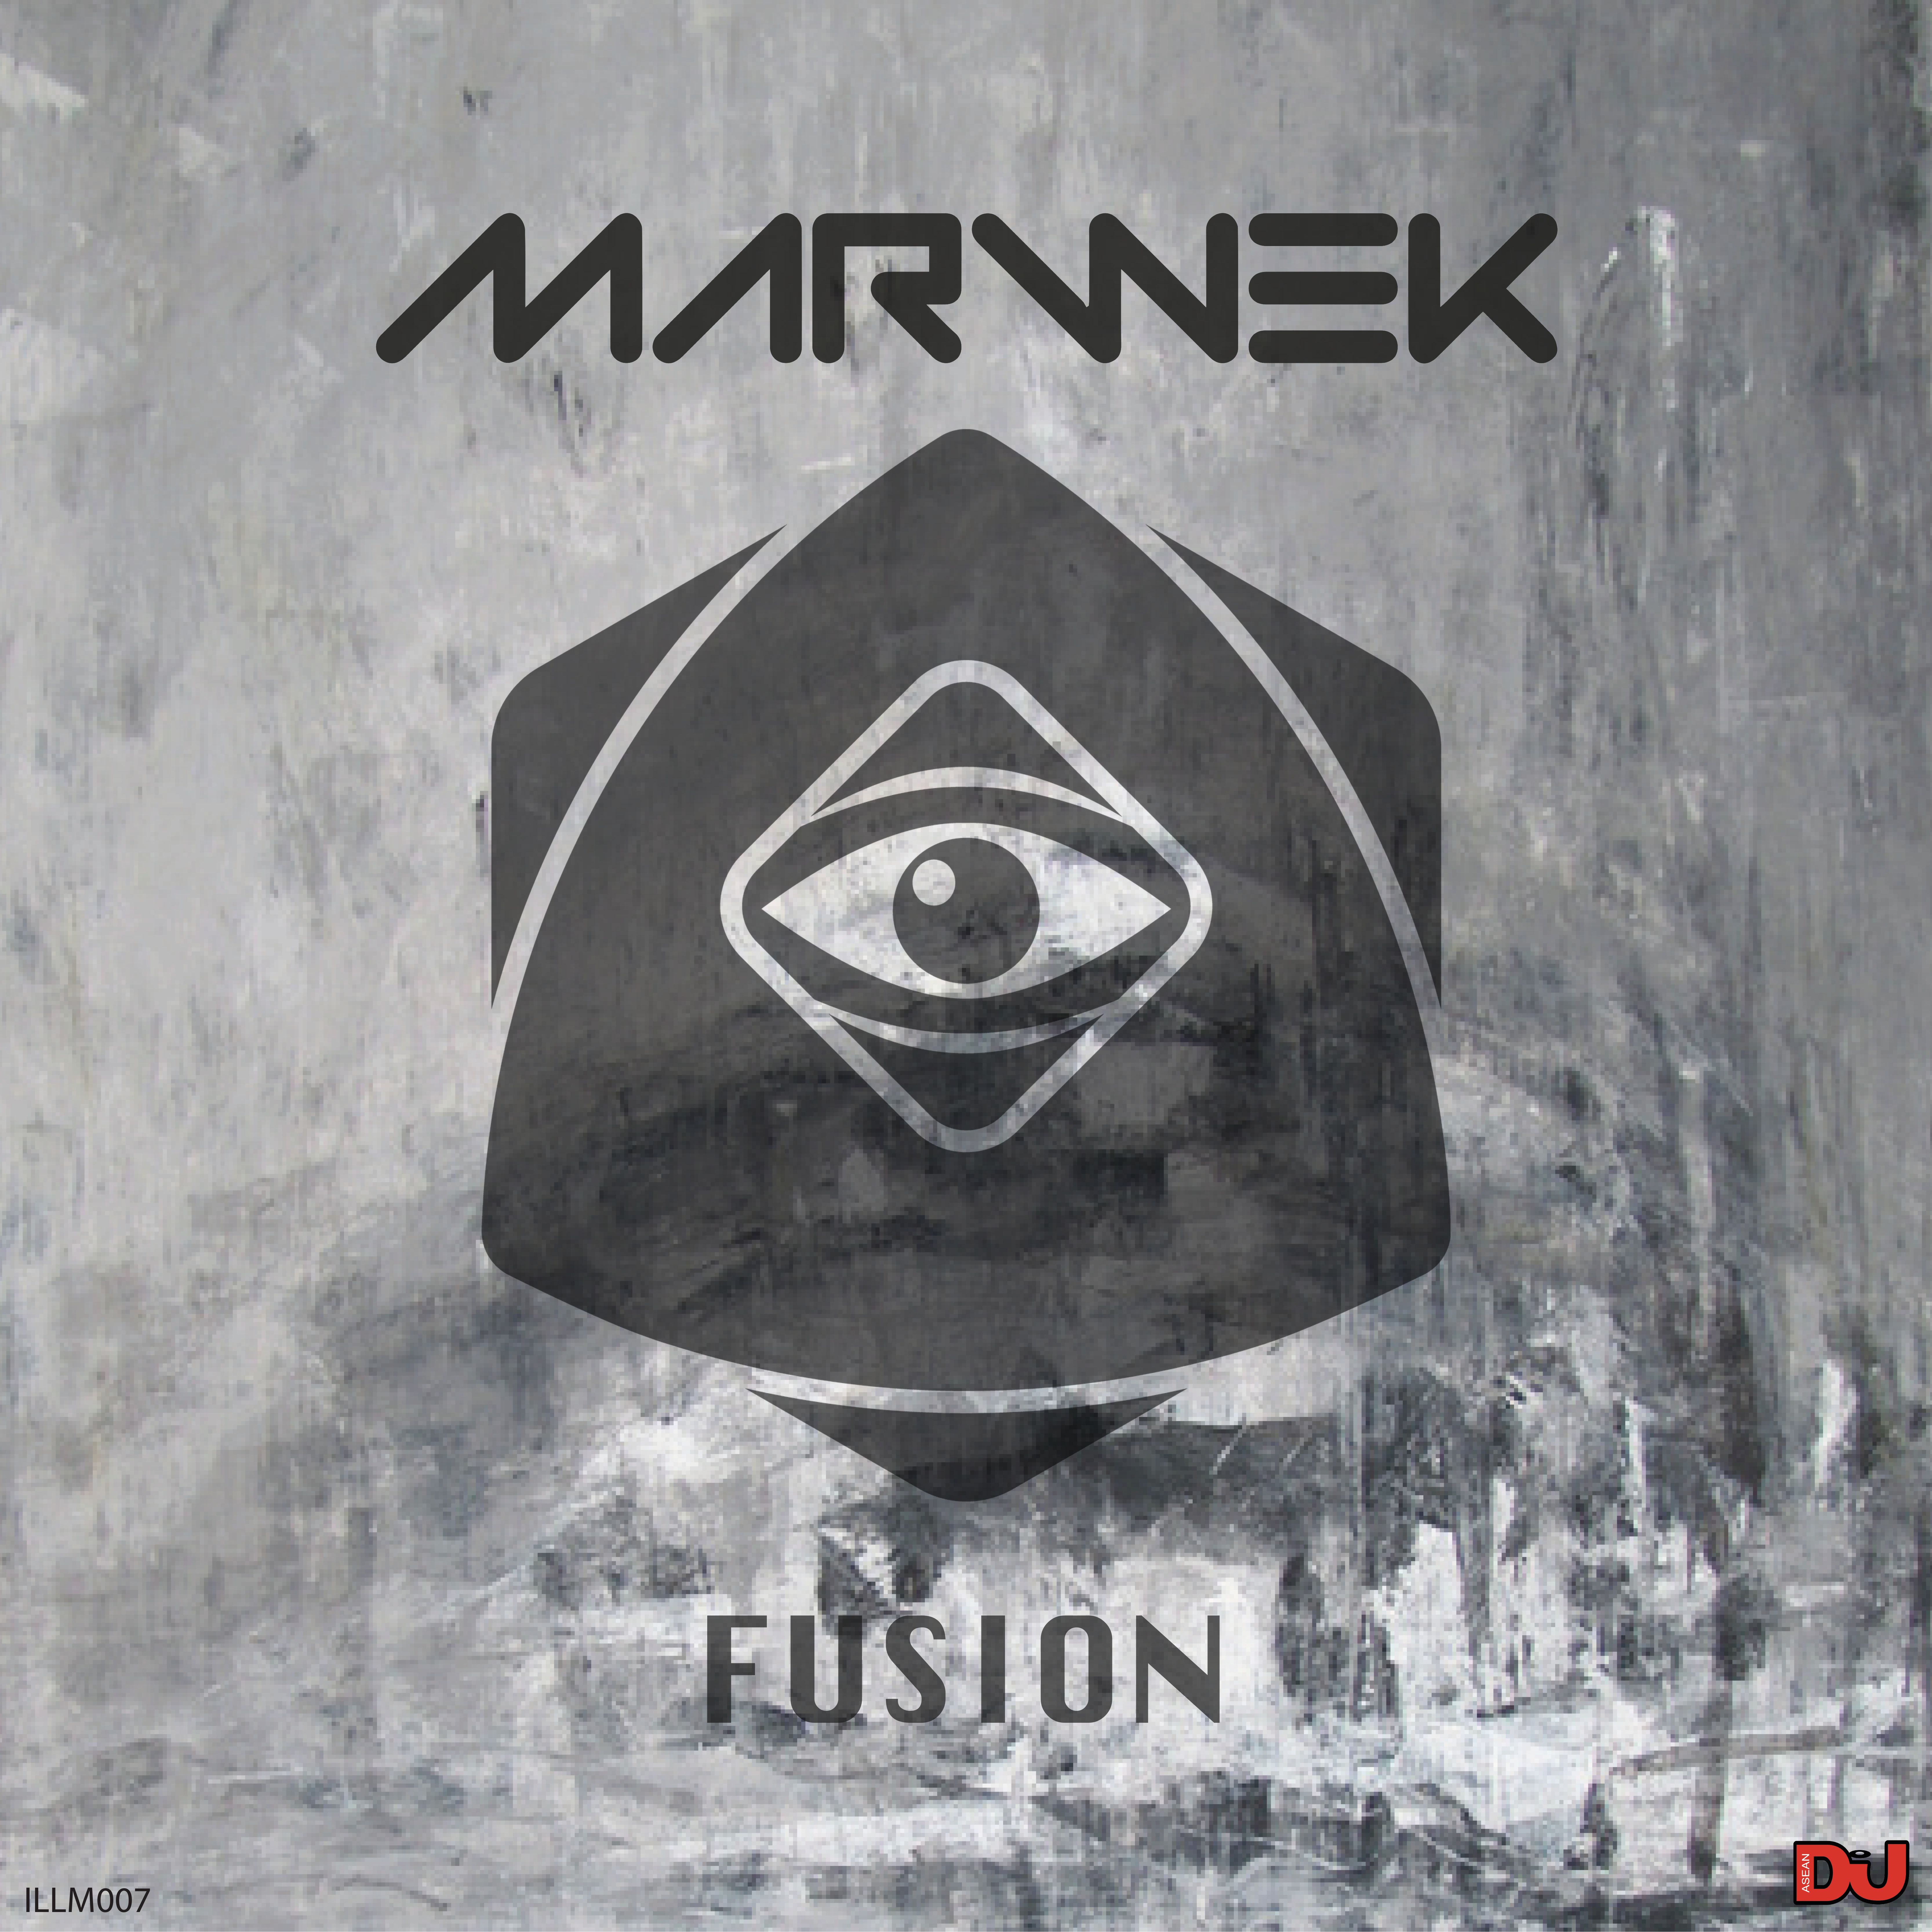 Stiahnuť ▼ Marwek - Fusion (Original Mix)